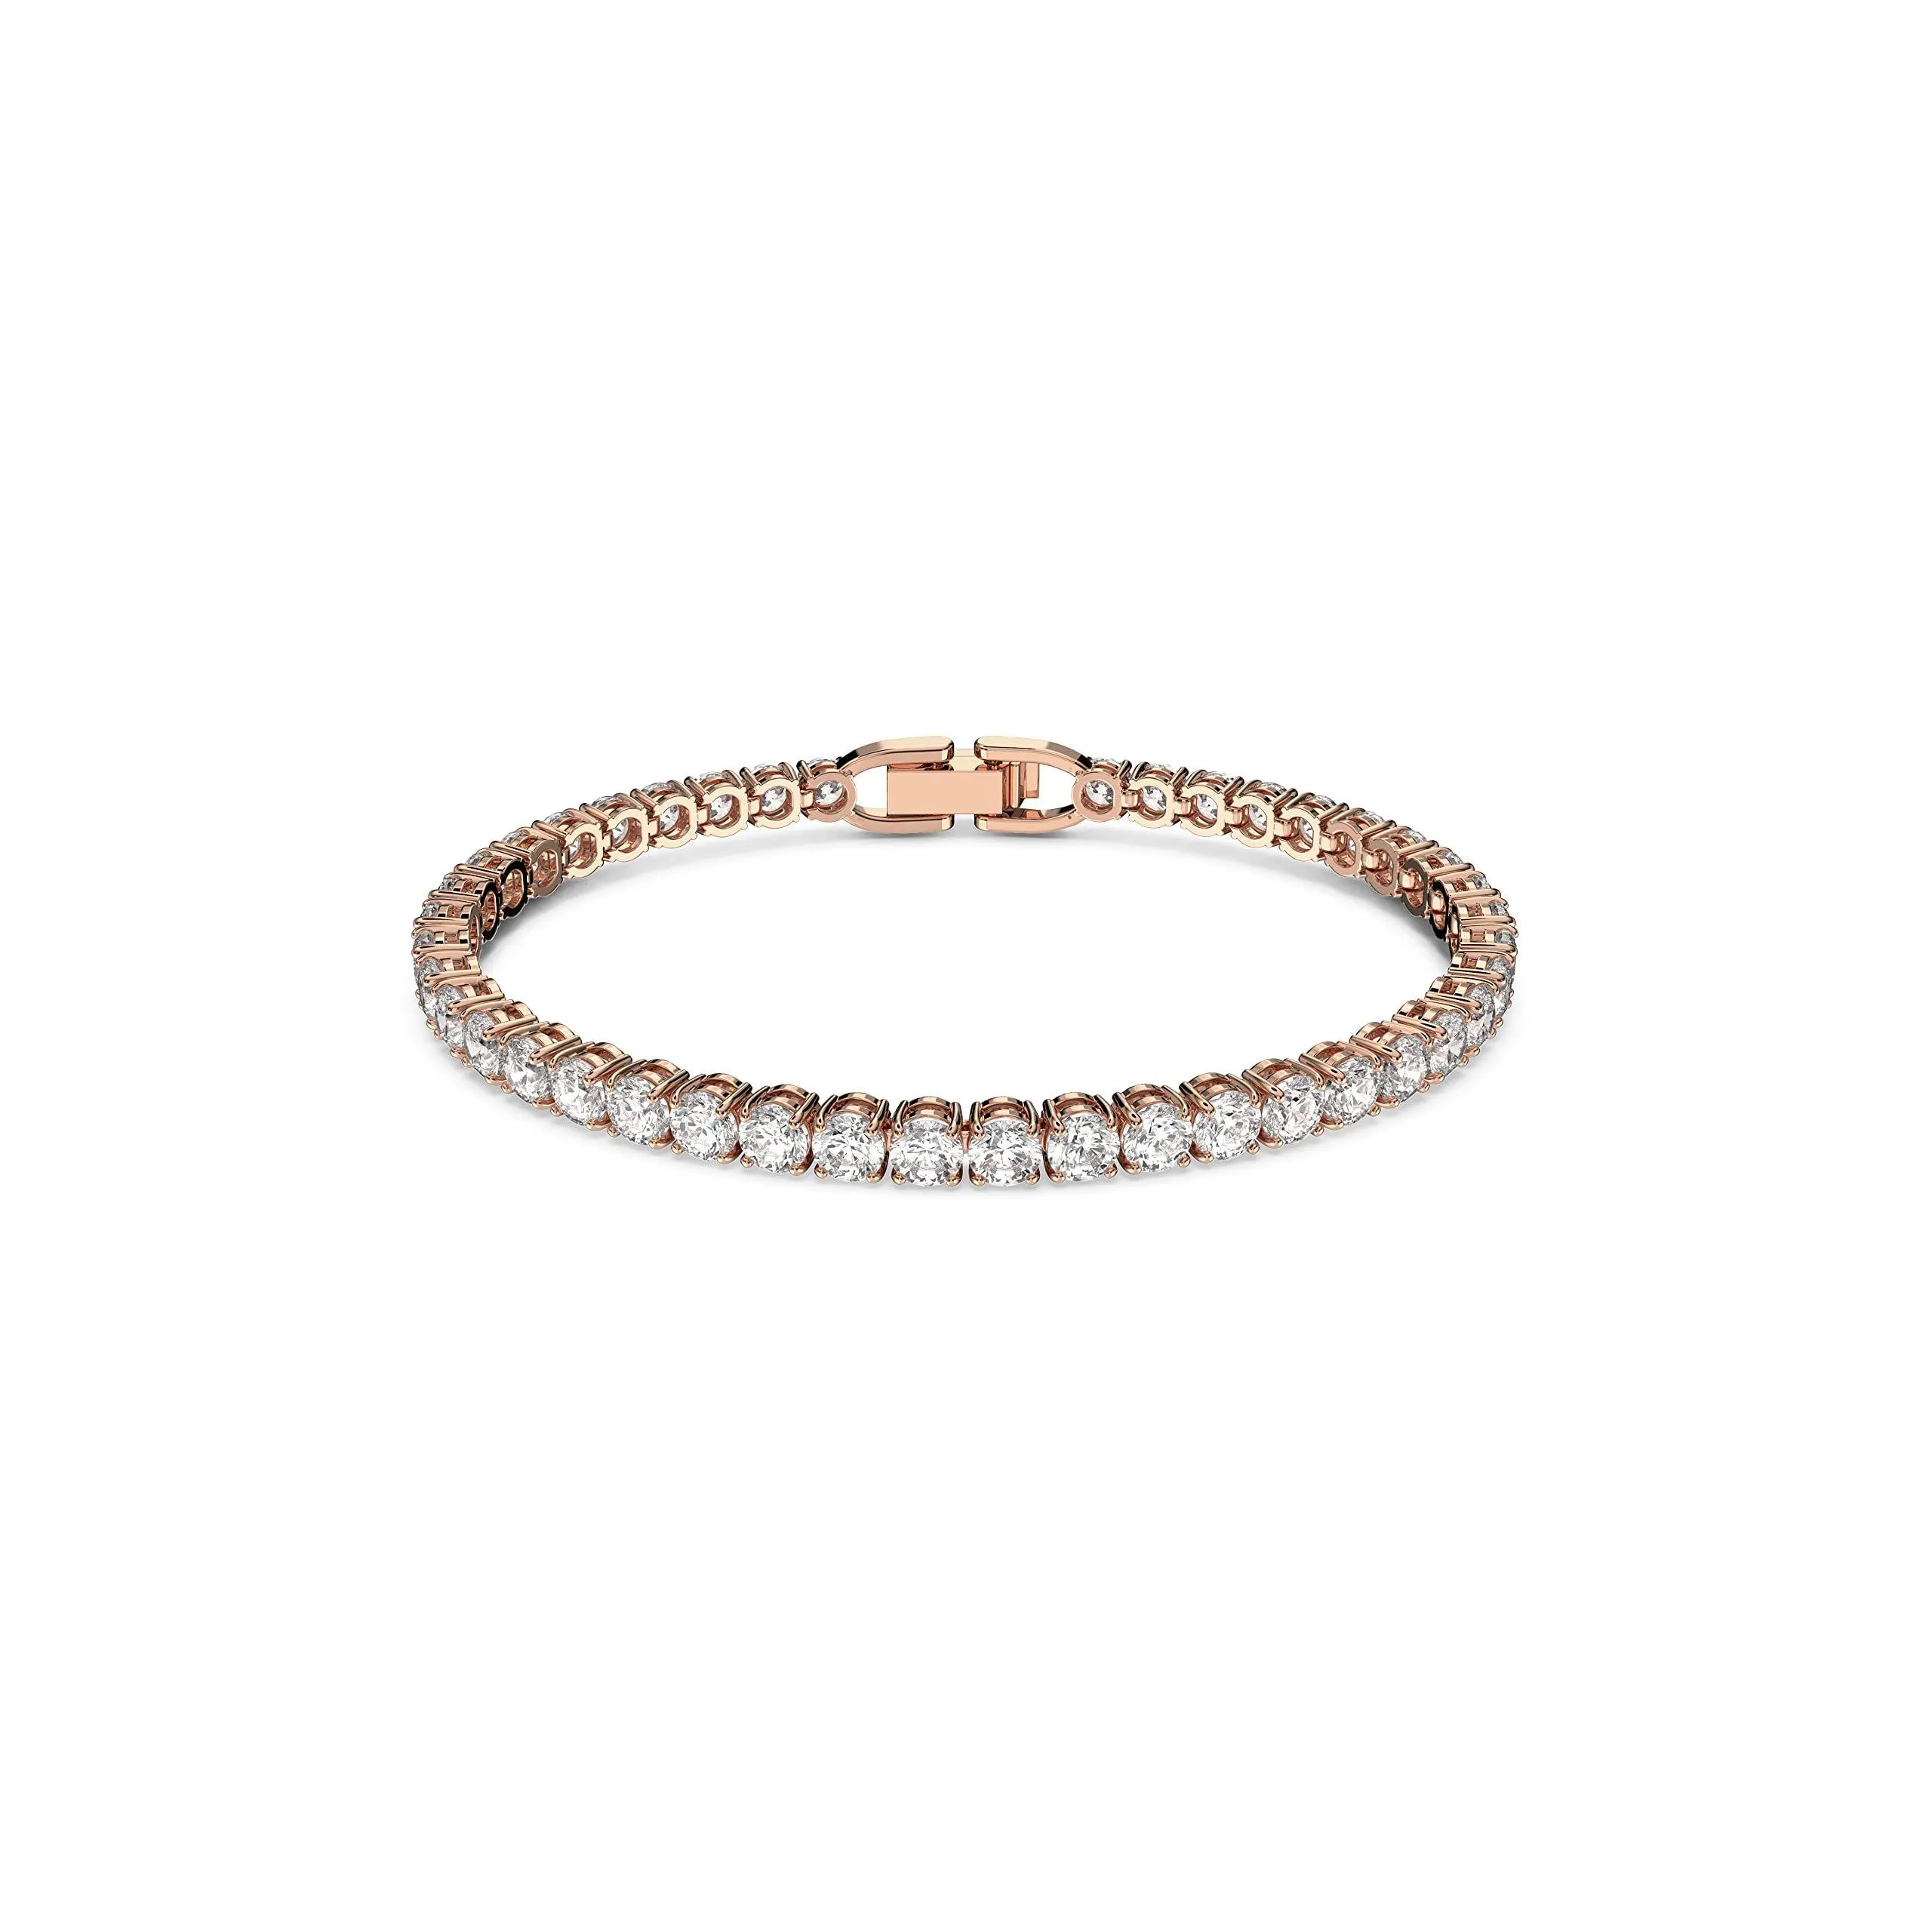 Urok bransoletki Tennis Deluxe Collection Bransoletka damska błyszcząca biała kryształy z różowym tonem platowane pasmo dostawa biżuterii otqx2